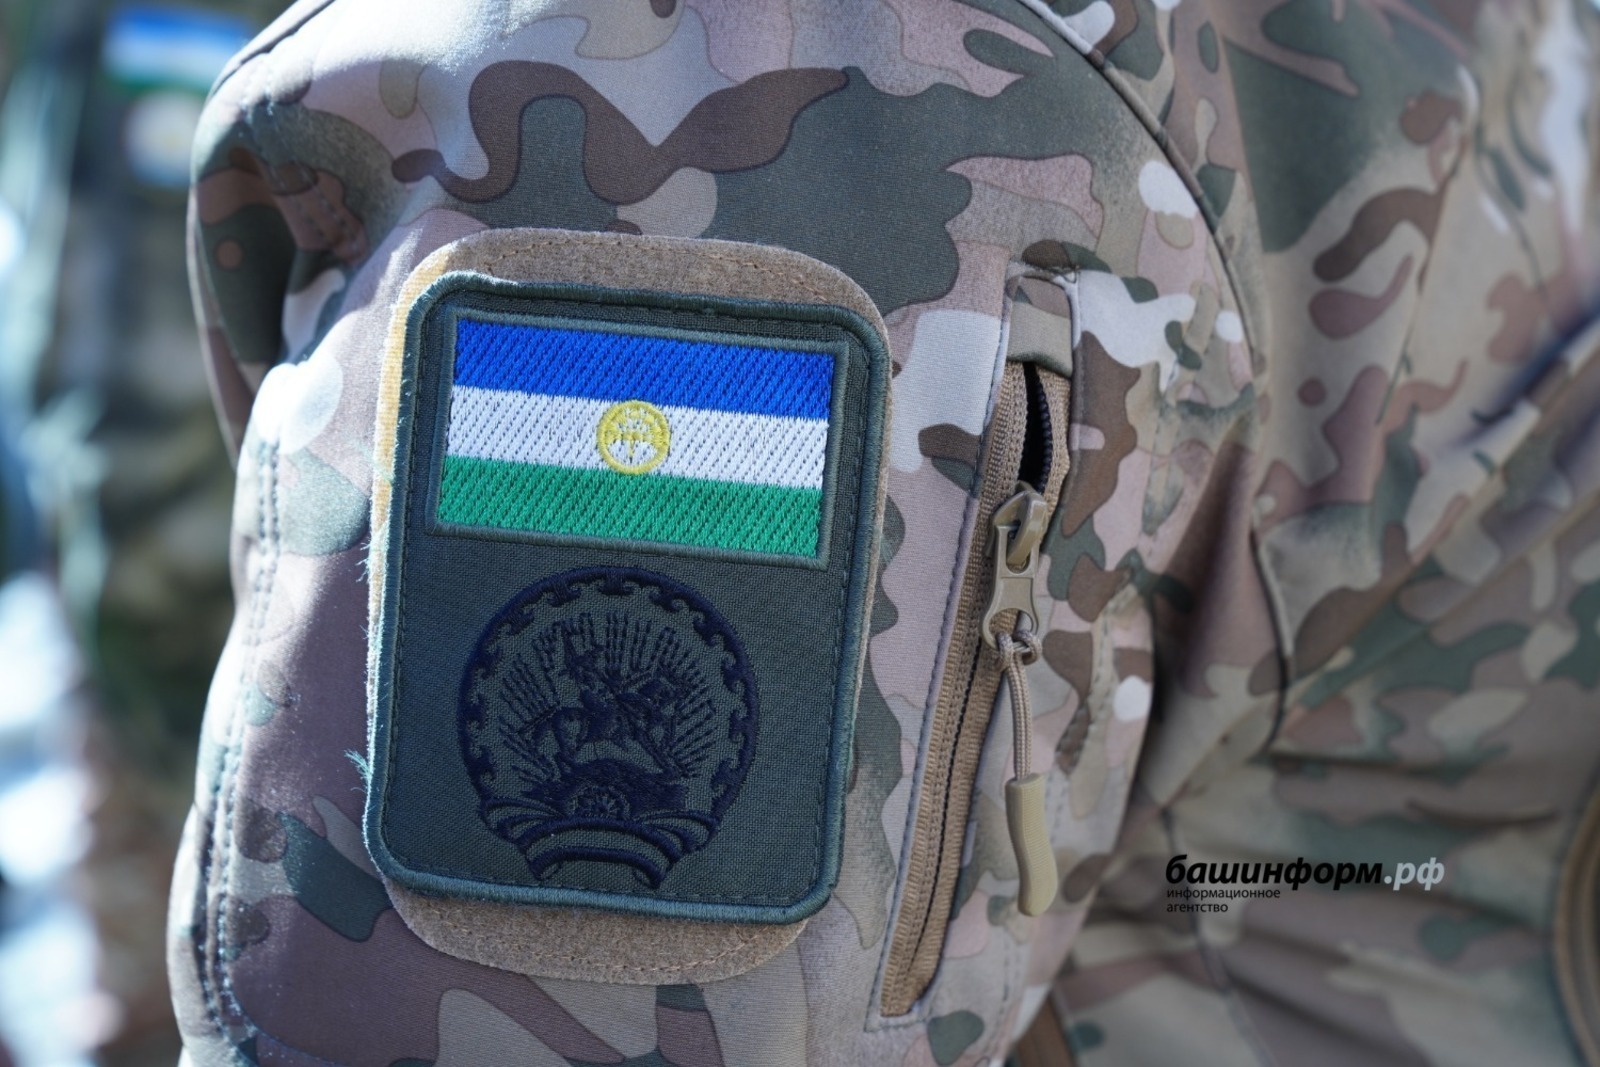 Правительство Башкирии поддержит инициативы ветеранов боевых действий по созданию новых батальонов